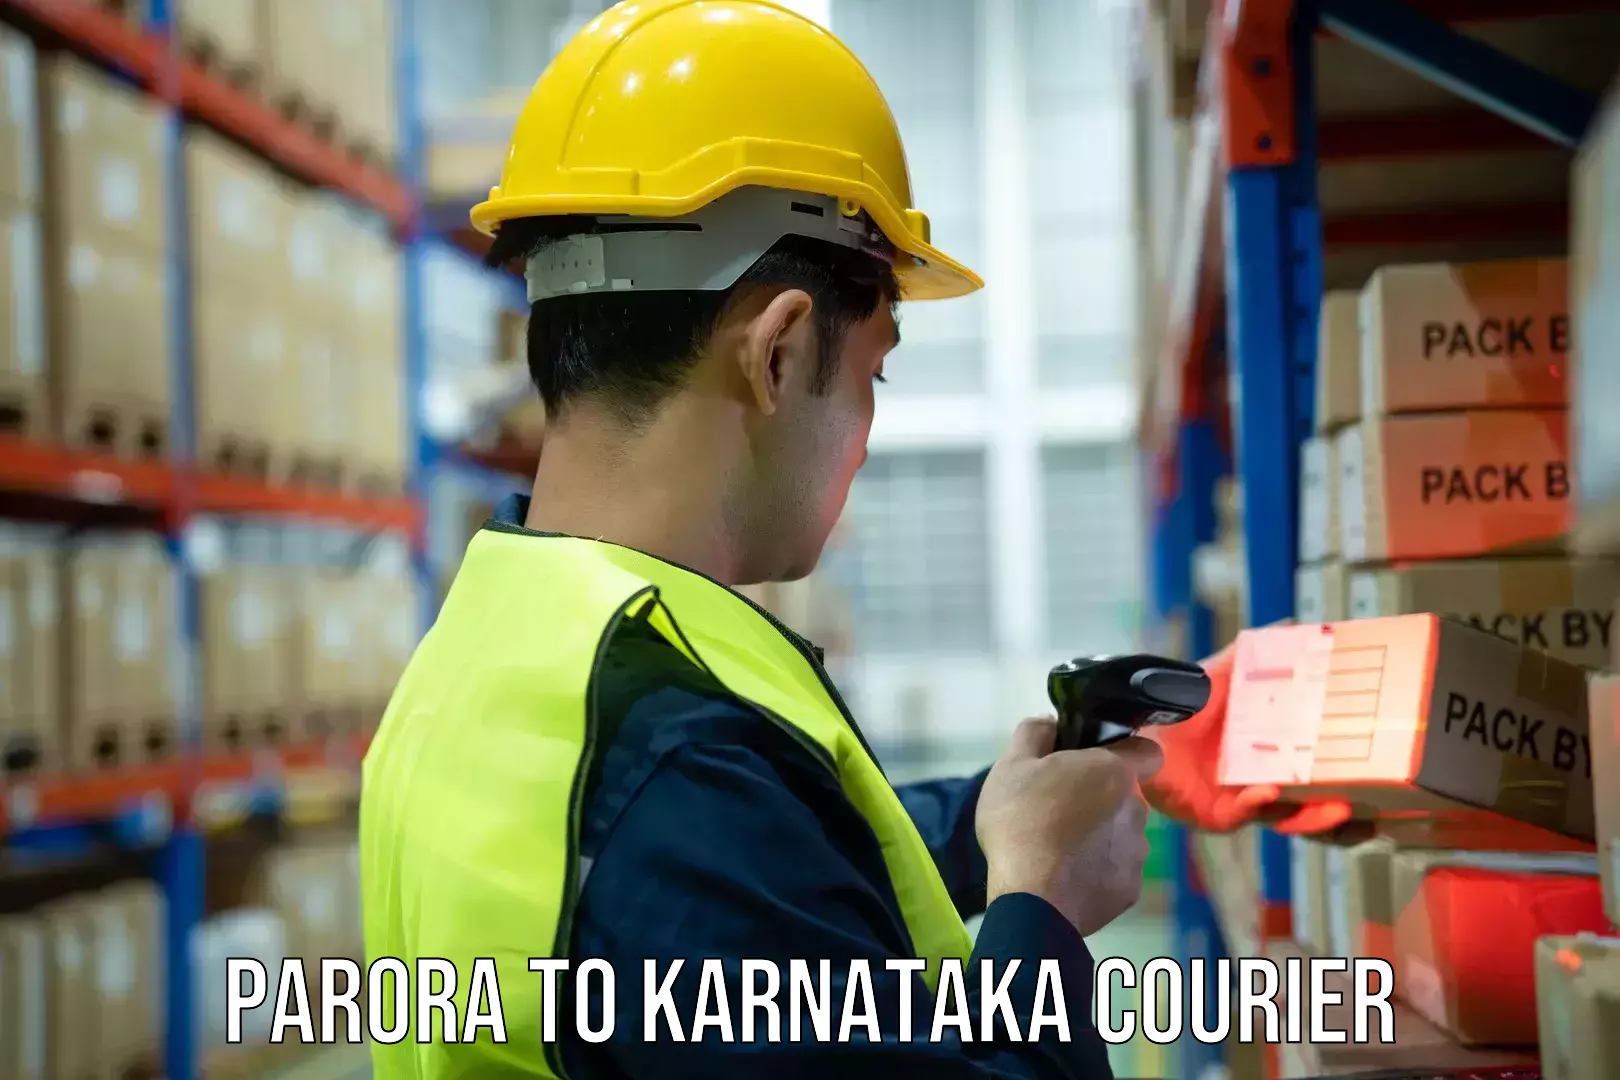 Flexible delivery schedules Parora to Karnataka